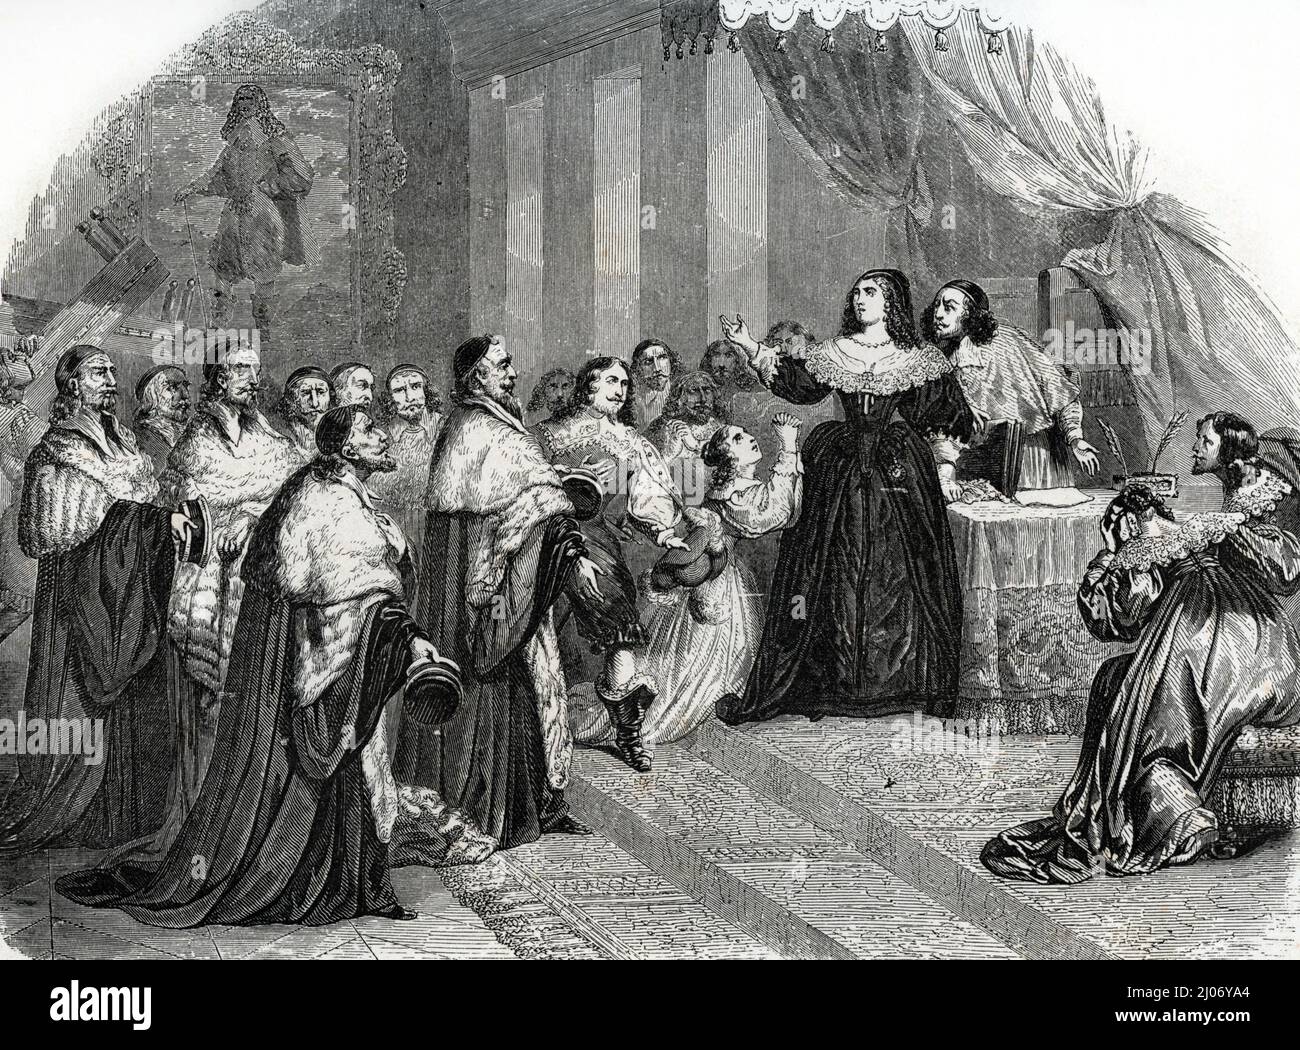 Fronde (1648-1653) : 'le Parlement de Paris s'oppose à la reine Anne d'Autriche (1601-1666) demande la libération de Pierre Broussel (1575-1654) qu'elle et le cardinal Mazarin ont fait arrêter le 26 aout 1648' (Fronde (1648-1653) : "Le Parlement de Paris demande à la reine Anne d'Autriche (1601-1666) de libérer Pierre Broussel (1575-1654) qu'elle et le cardinal Mazarin avaient arrêté le 26 août 1648 ' Gravure tiree de 'Louis XIV et son siecle' d'Alexandre Dumas 1851 Collection privee Banque D'Images